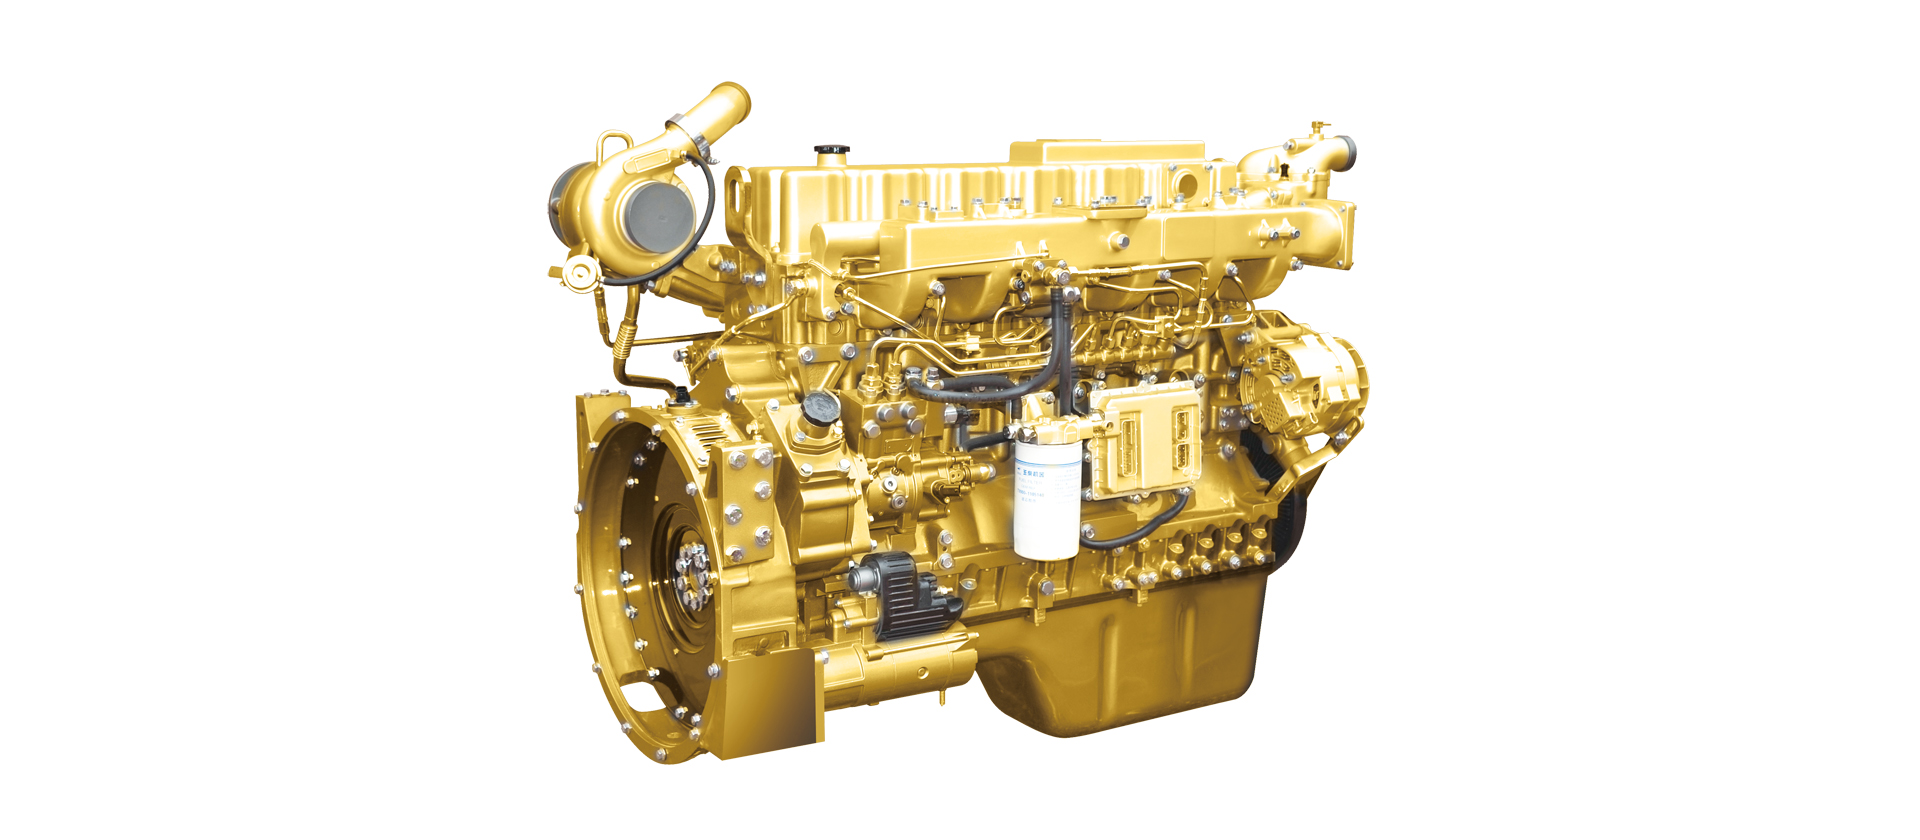 H7牵引车 发动机：玉柴6K发动机开发应用航空发动机可靠性增长技术，历经多种严苛可靠性试验，确保整机出厂品质